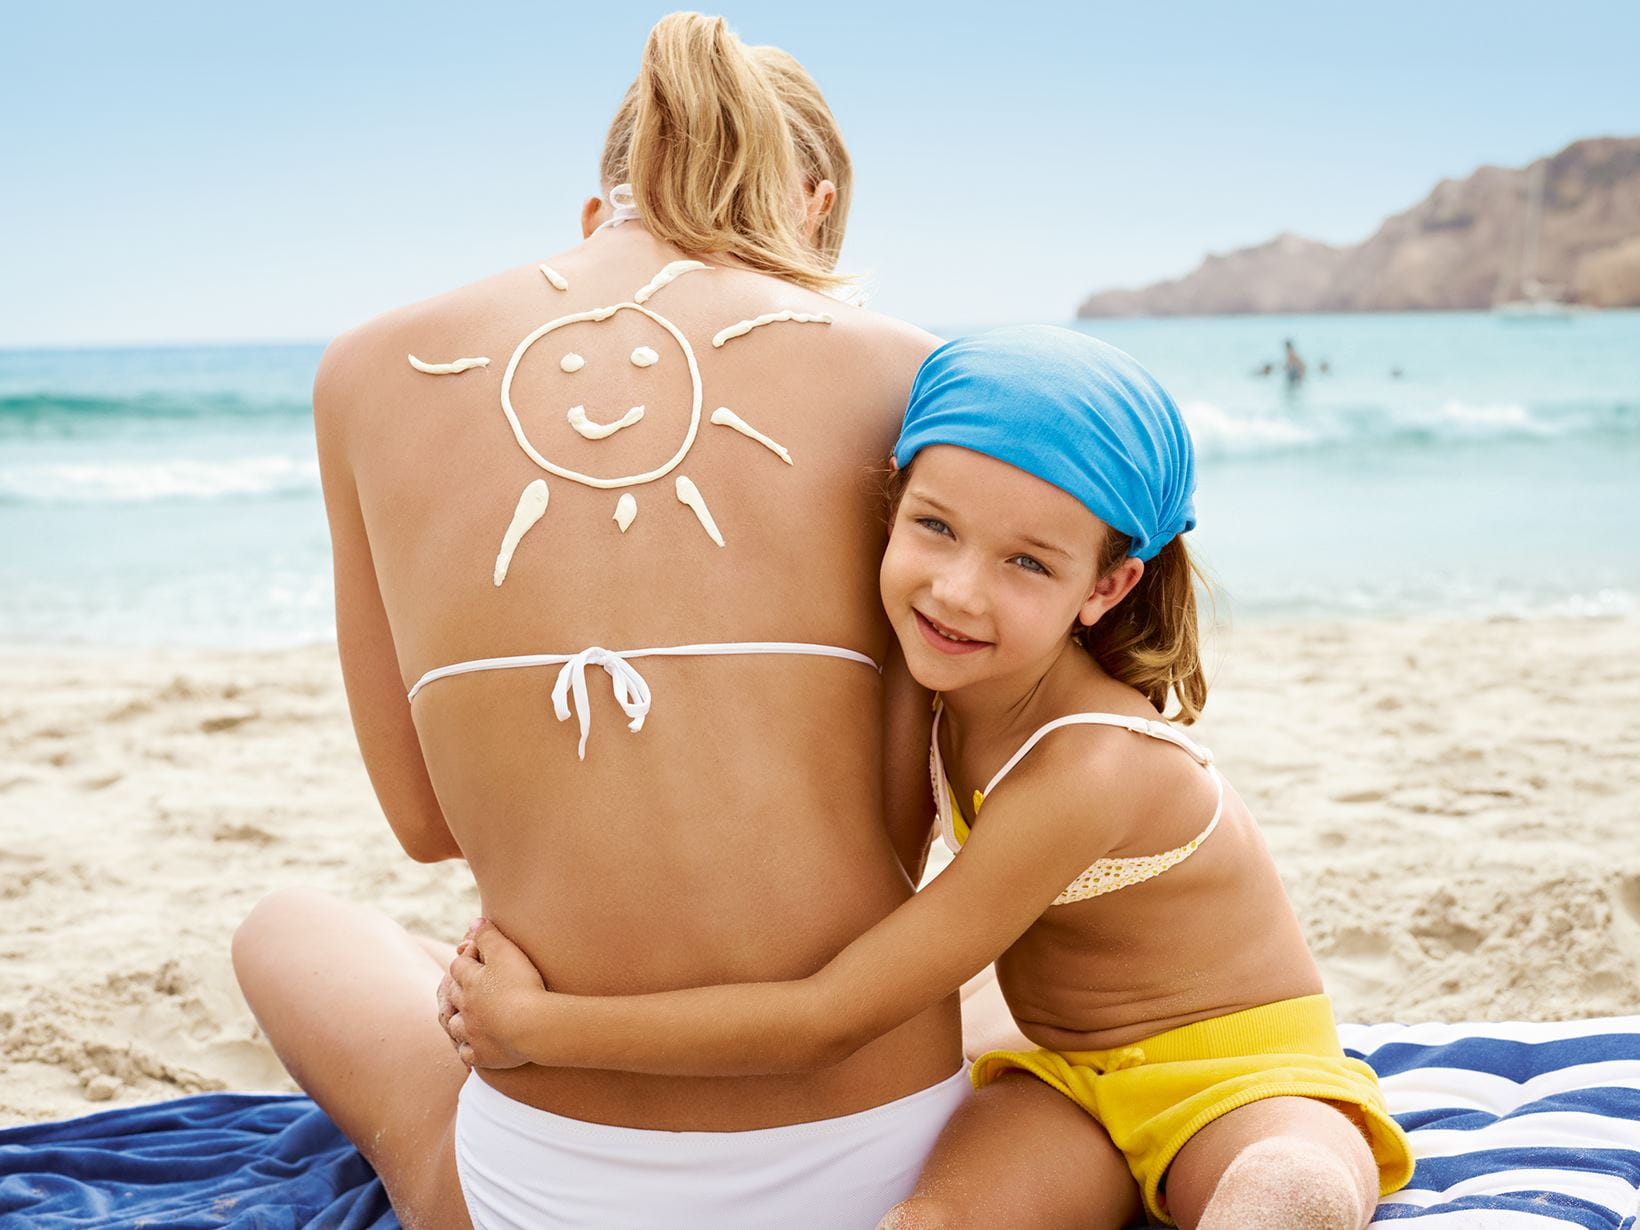 5 Top Tipps für sicheren Spaß in der Sonne – NIVEA